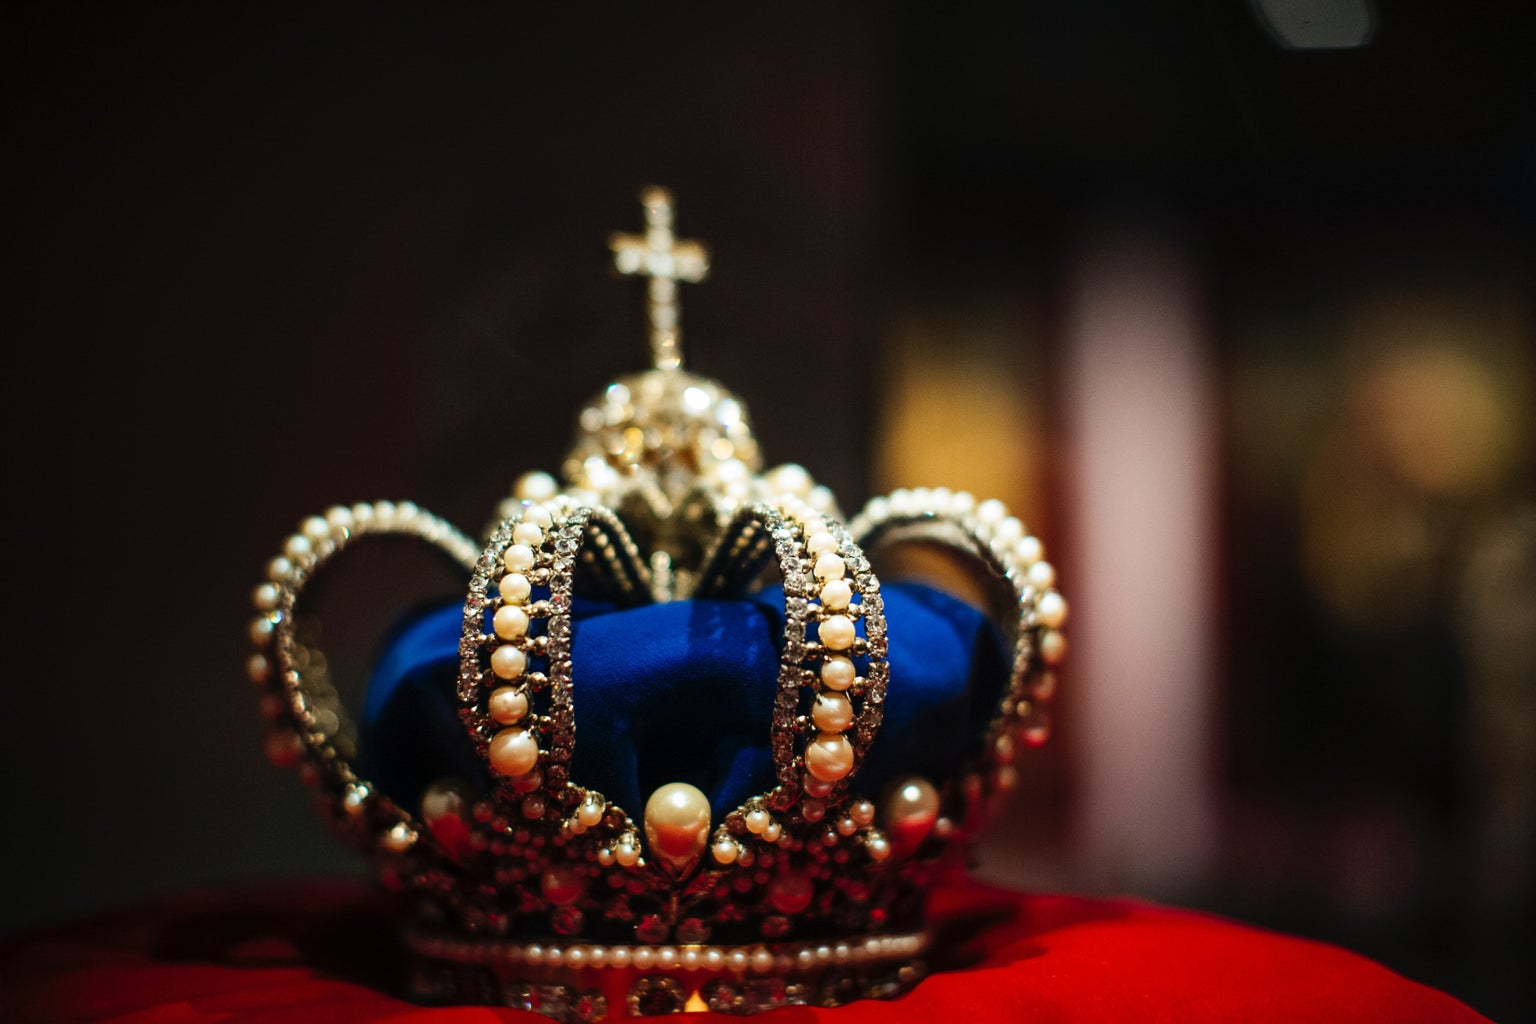 ornate crown